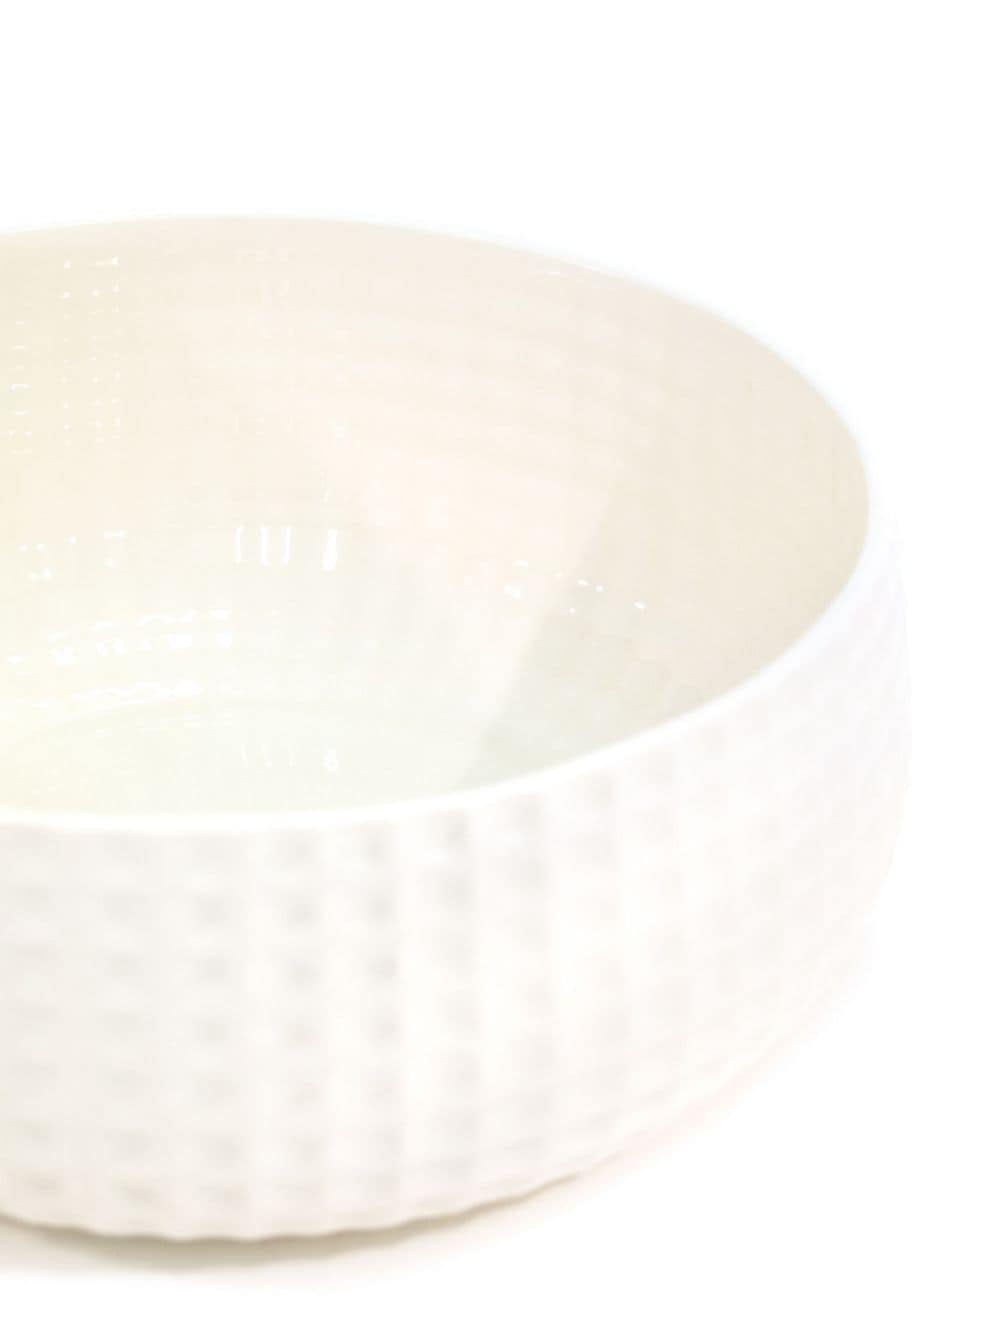 Cappellini Trace bowl (32cm x 11cm) - Wit